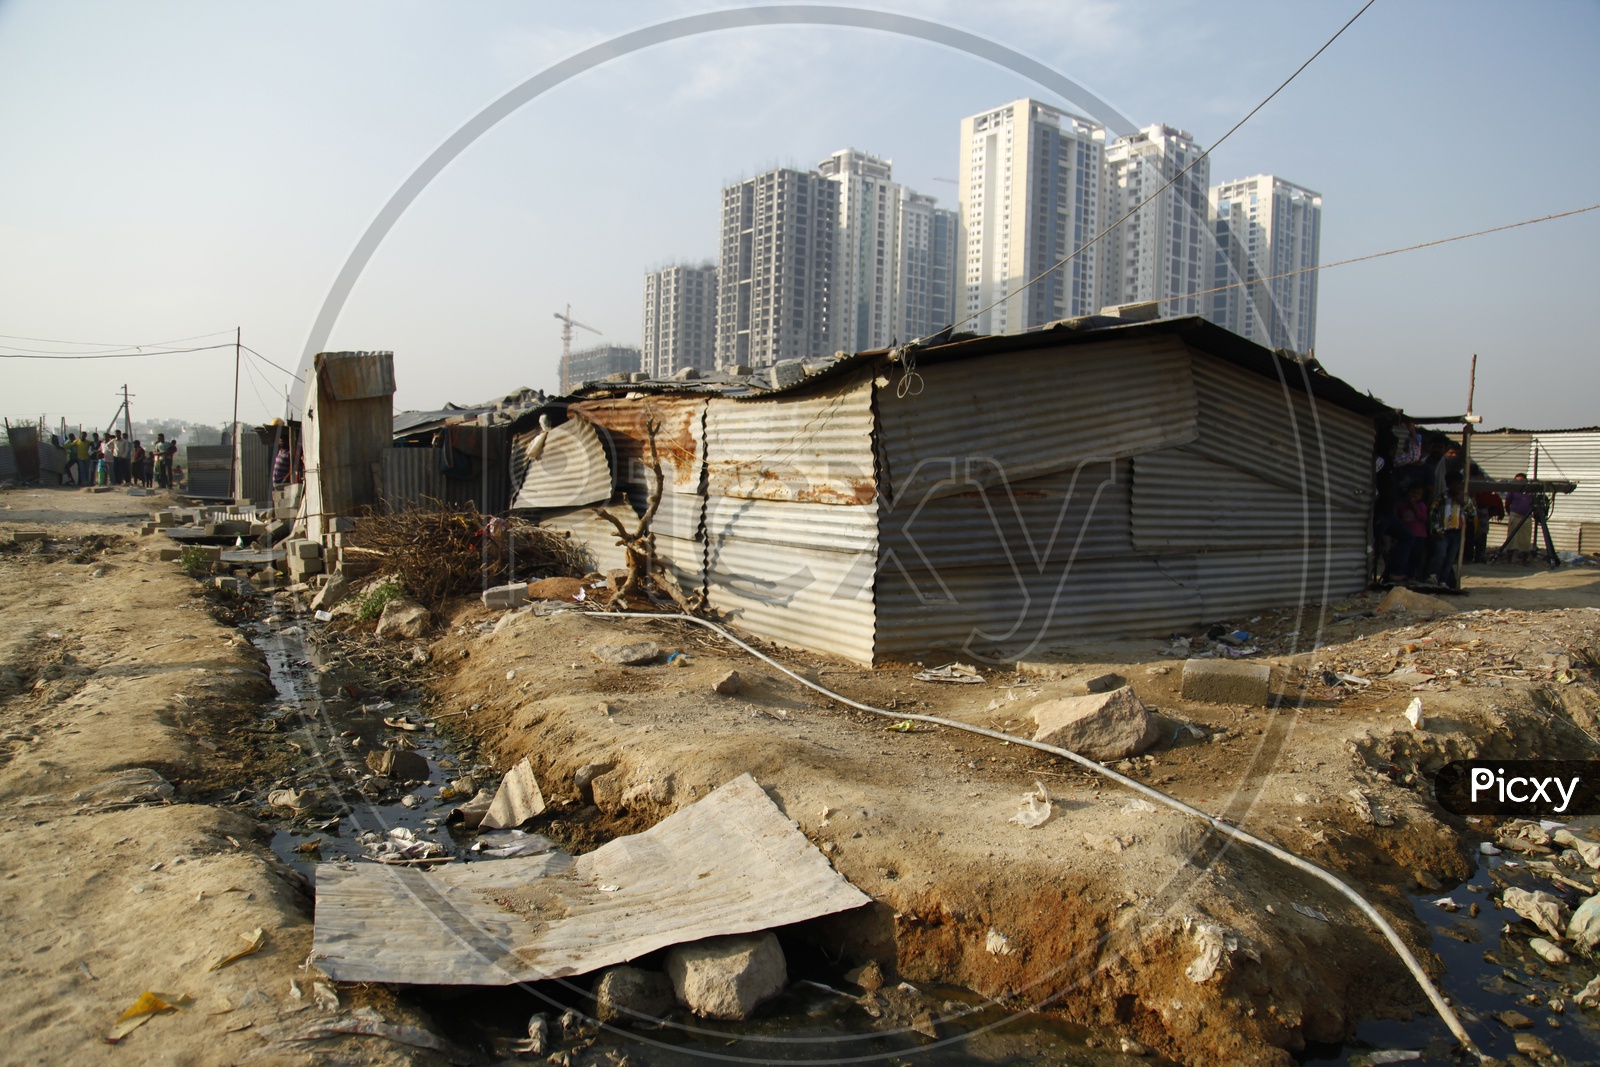 Slum area alongside the High rise buildings